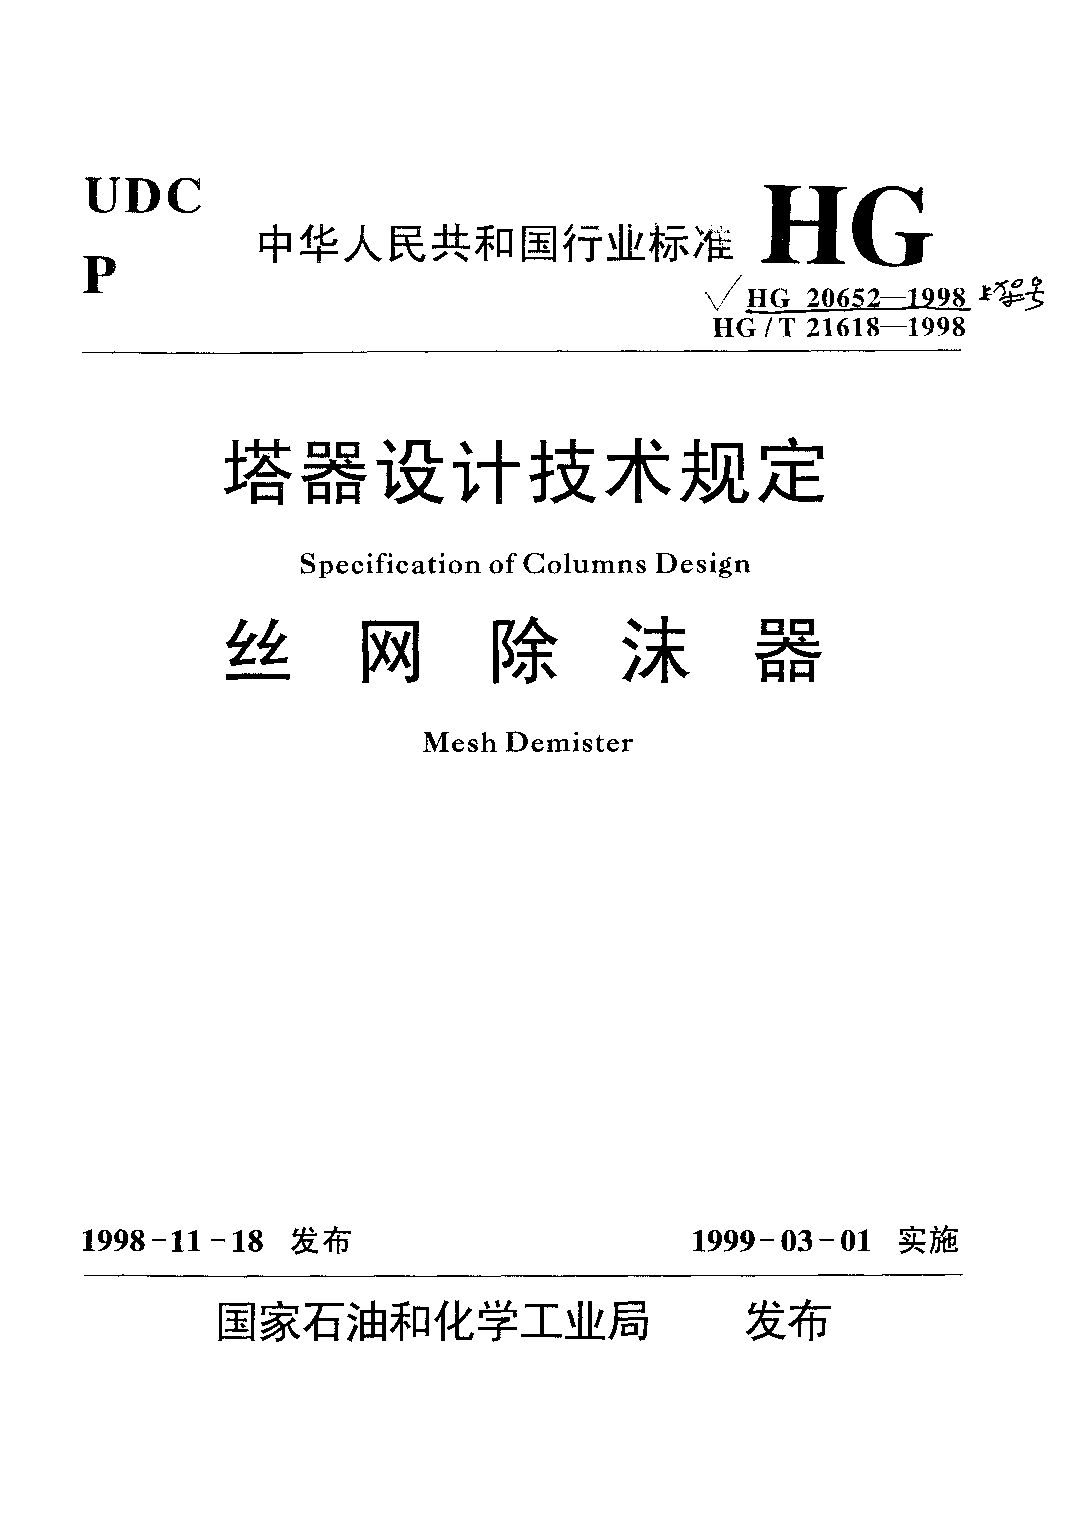 HG/T 21618-1998